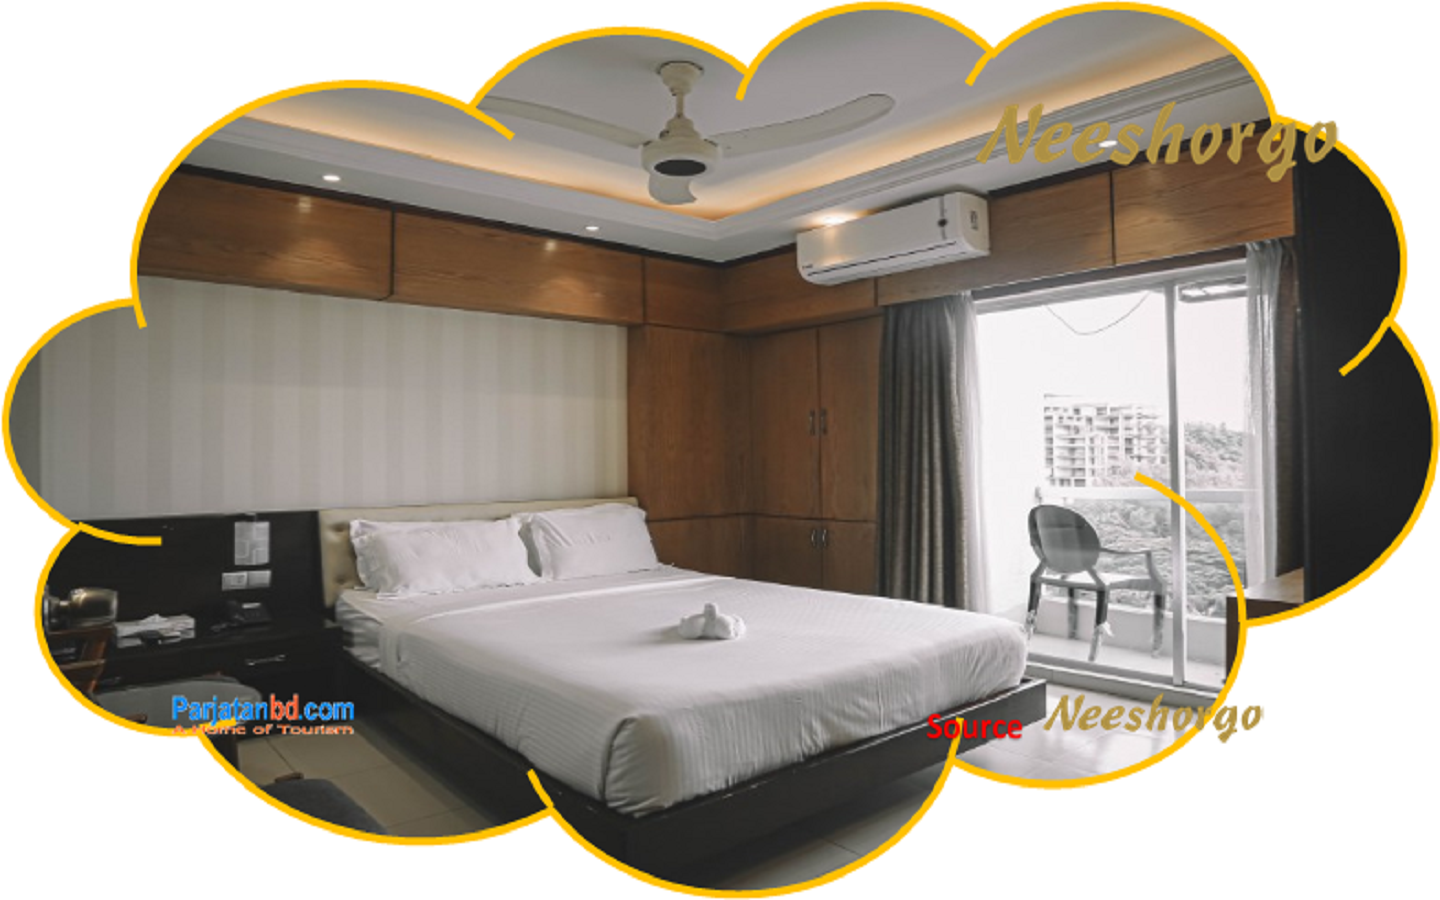 Room Couple Suite (Hill View) -1, Neeshorgo Hotel & Resort Ltd.